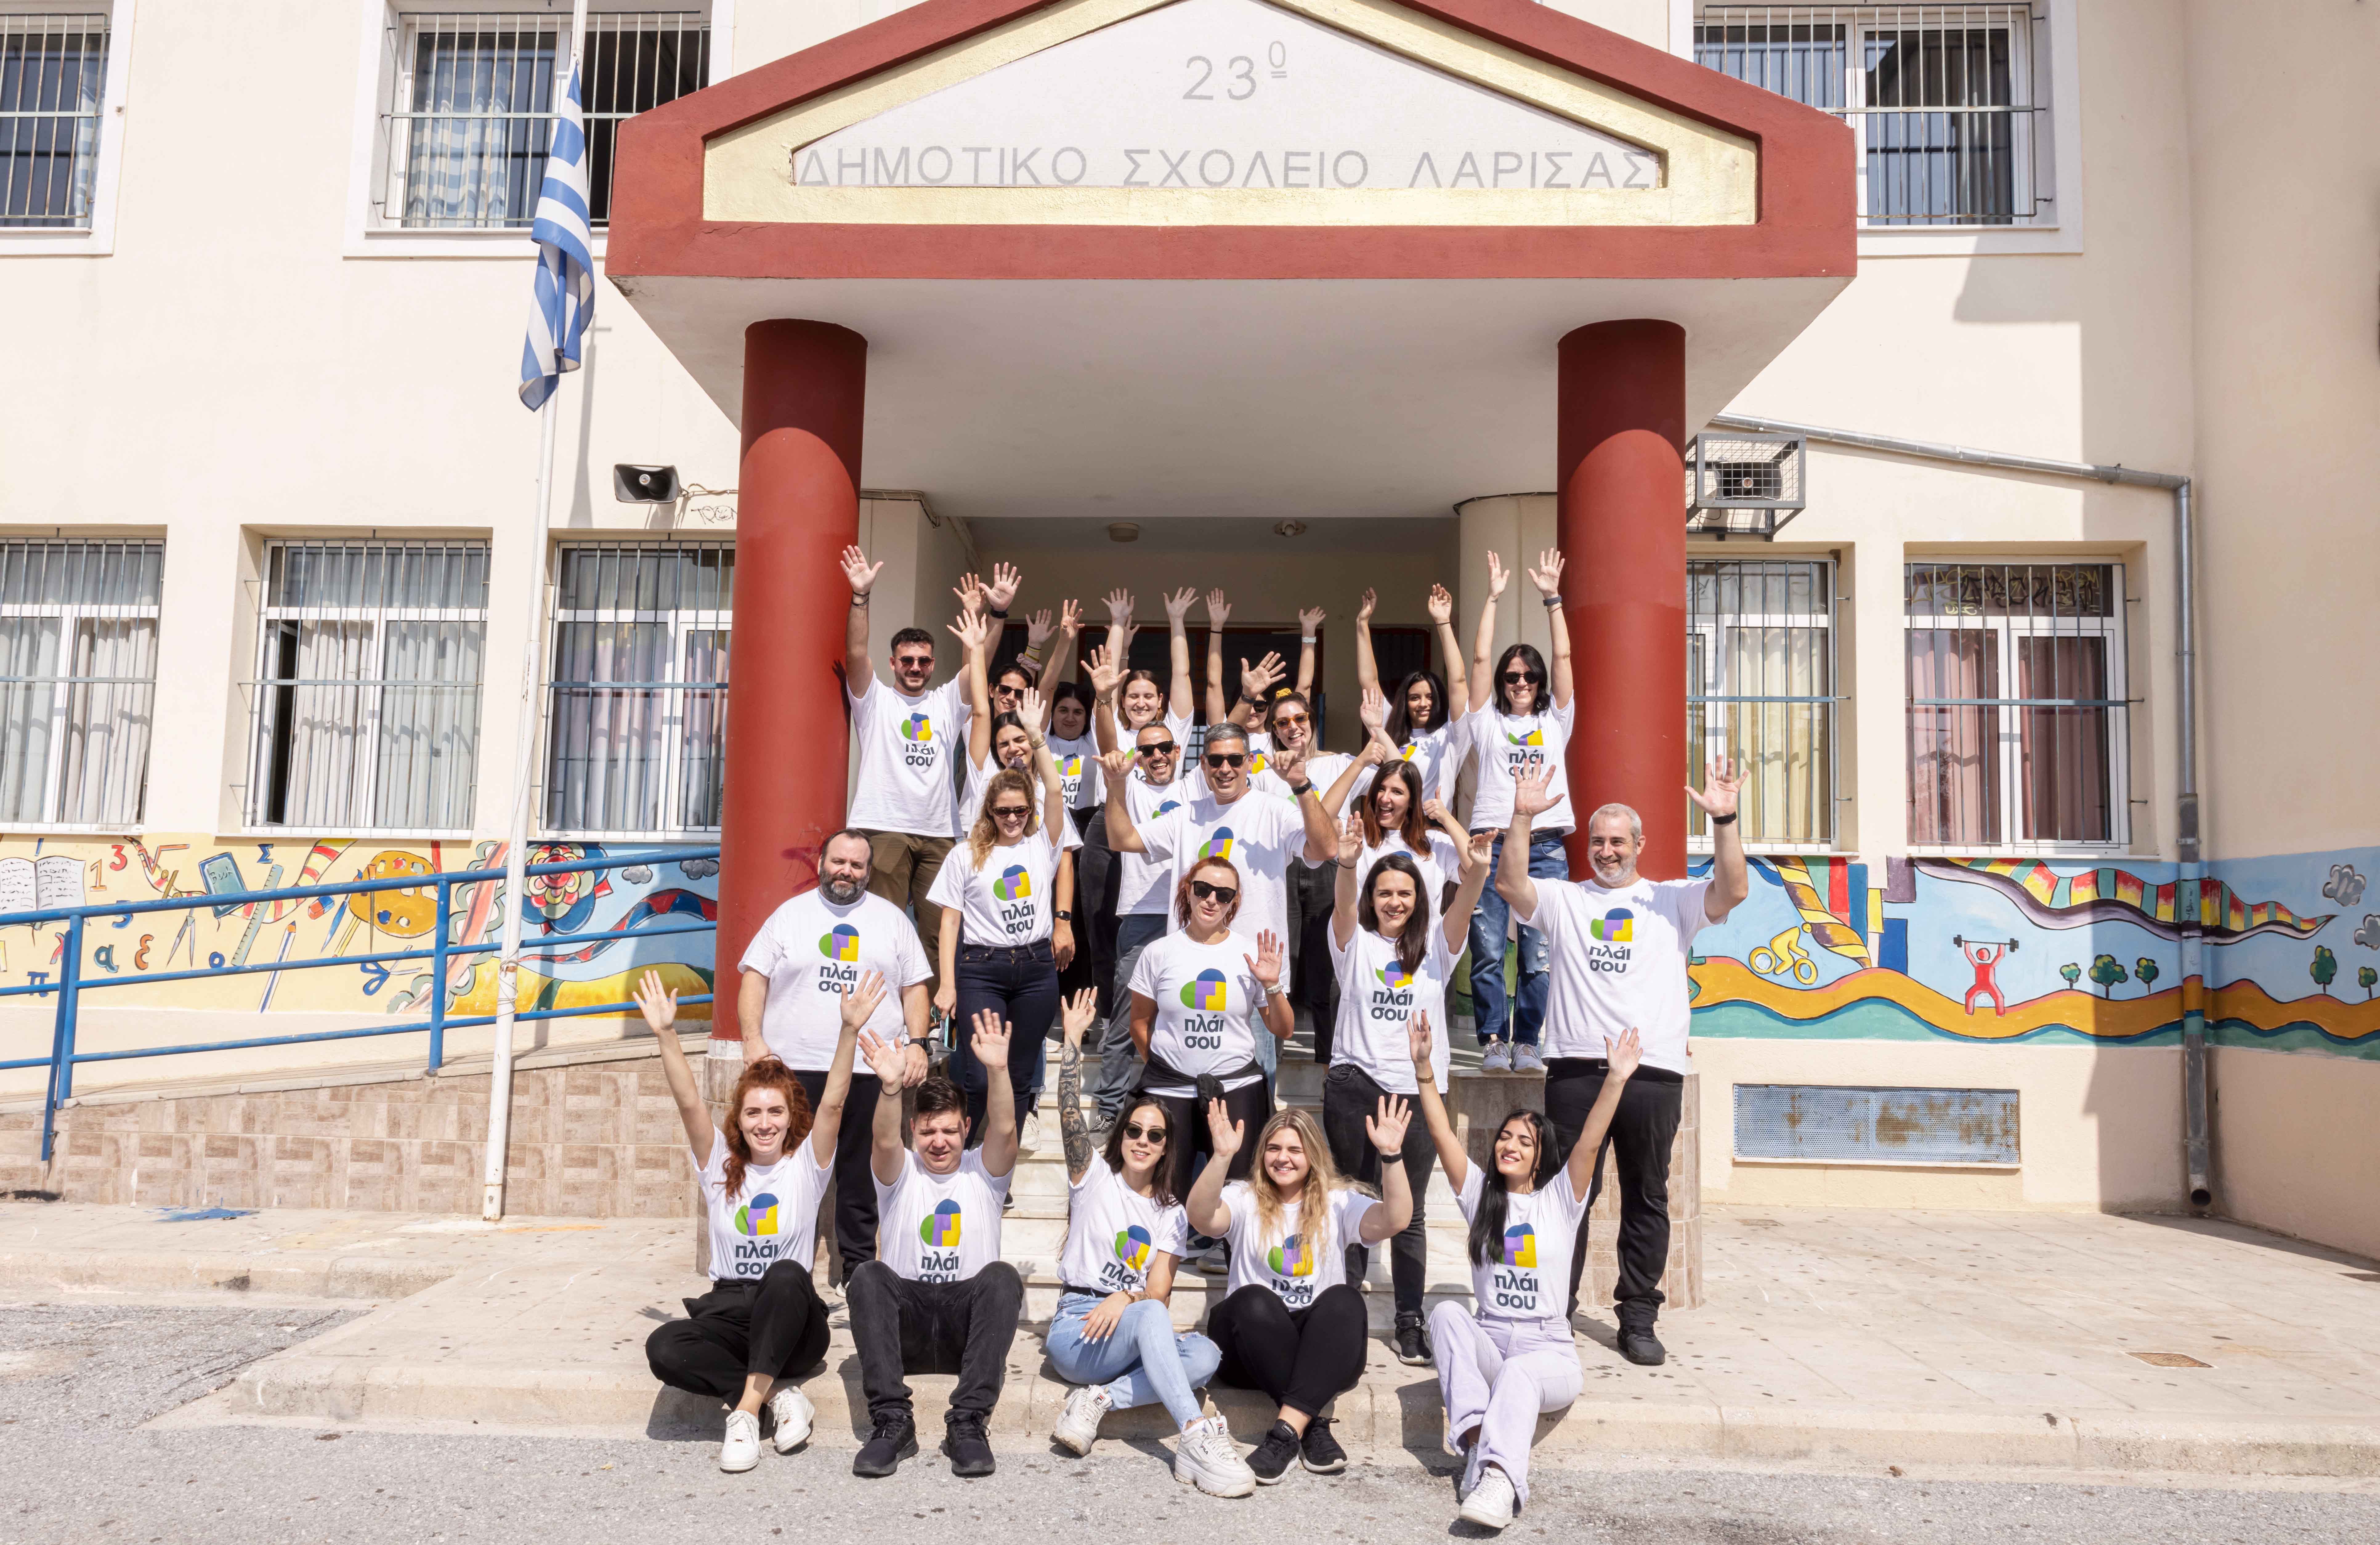 Μοιράζουμε ελπίδα & σχολικά είδη στη Β. Εύβοια